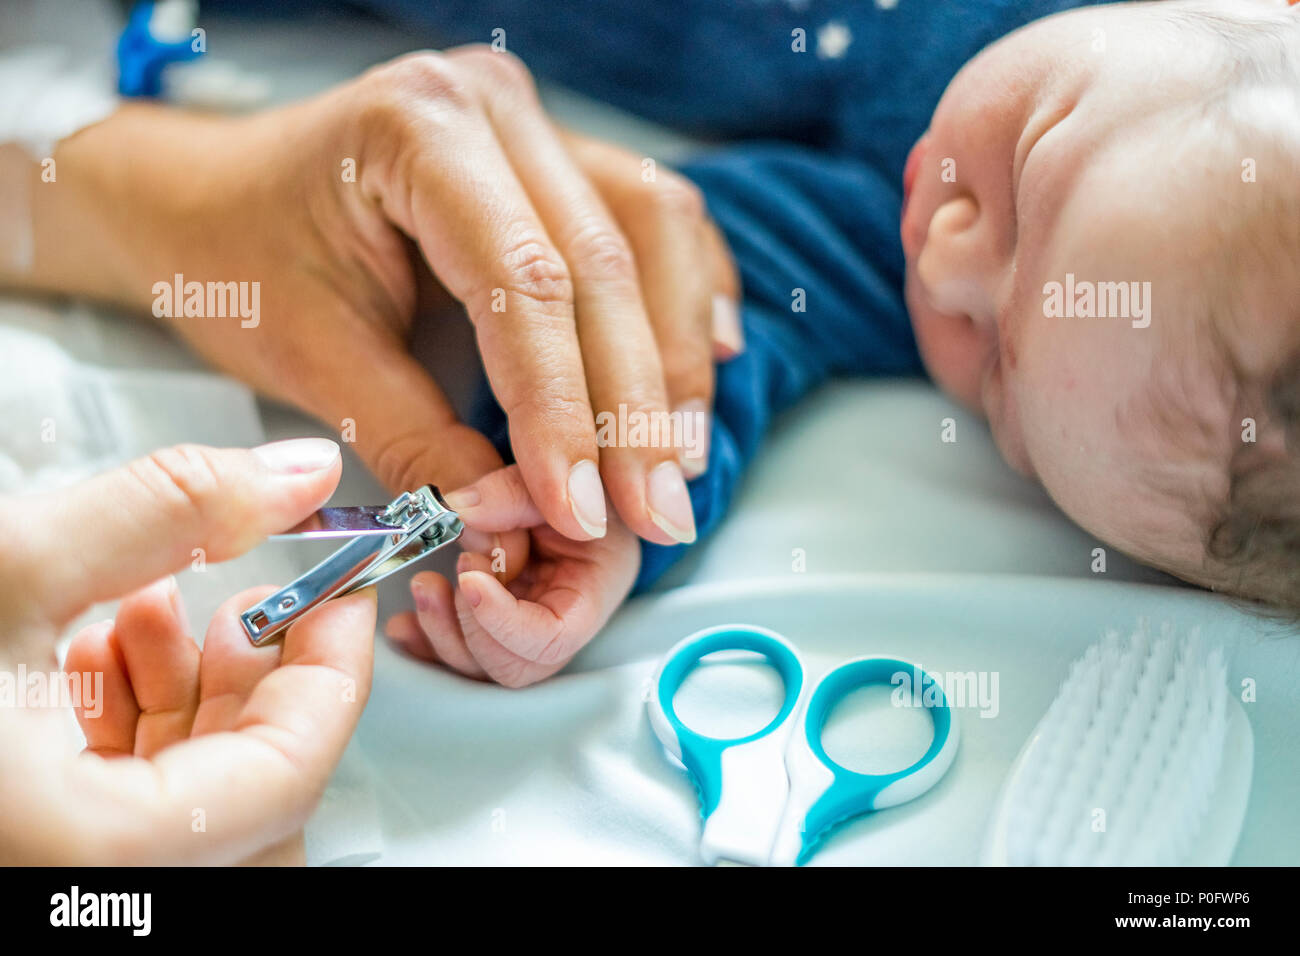 Mutter schneidet Fingernägel von Ihrem neugeborenen Baby im Krankenhaus  Stockfotografie - Alamy